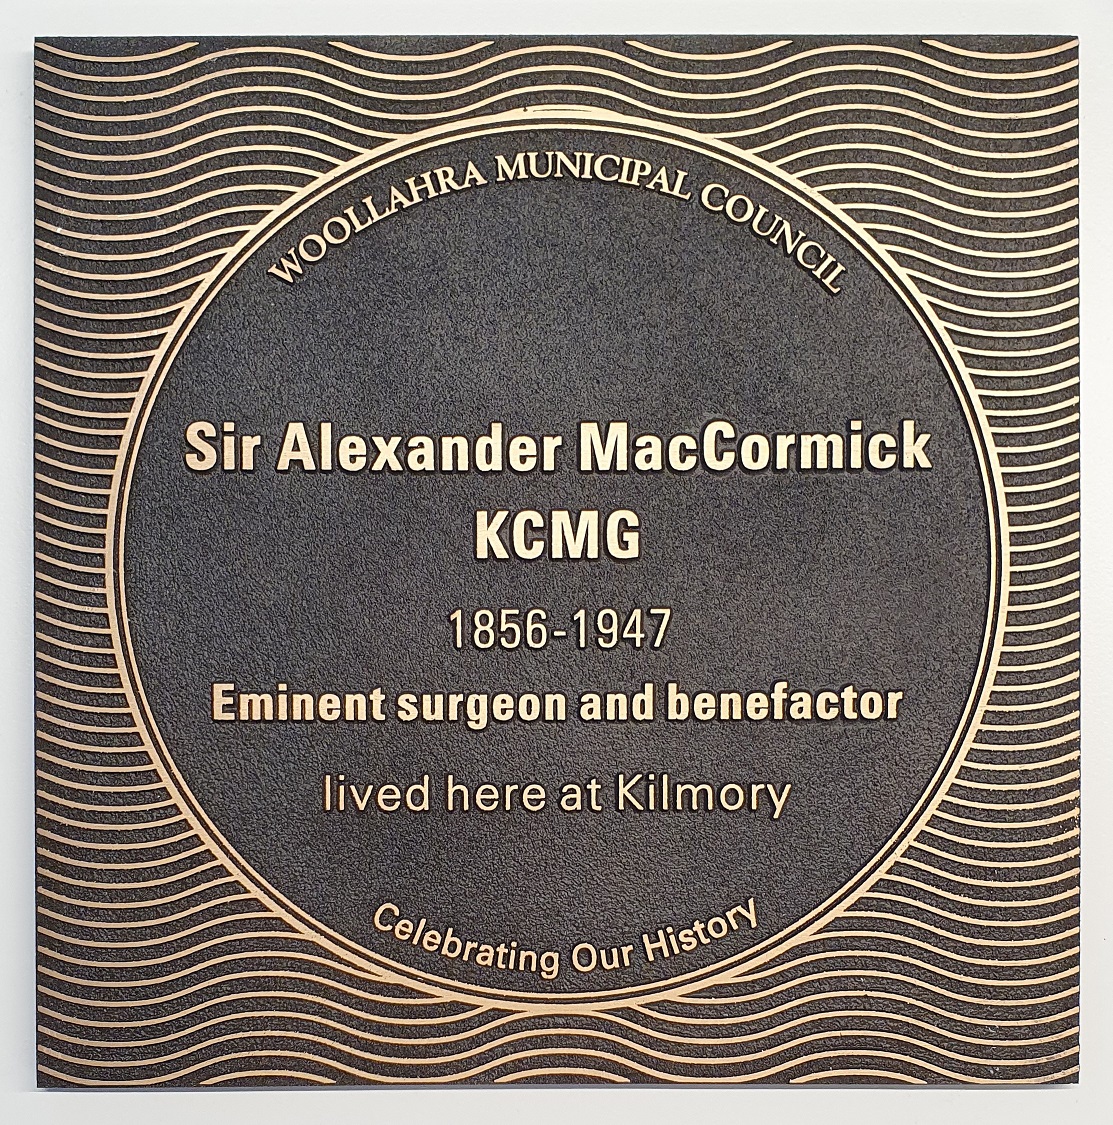 Sir Alexander MacCormick KCMG plaque